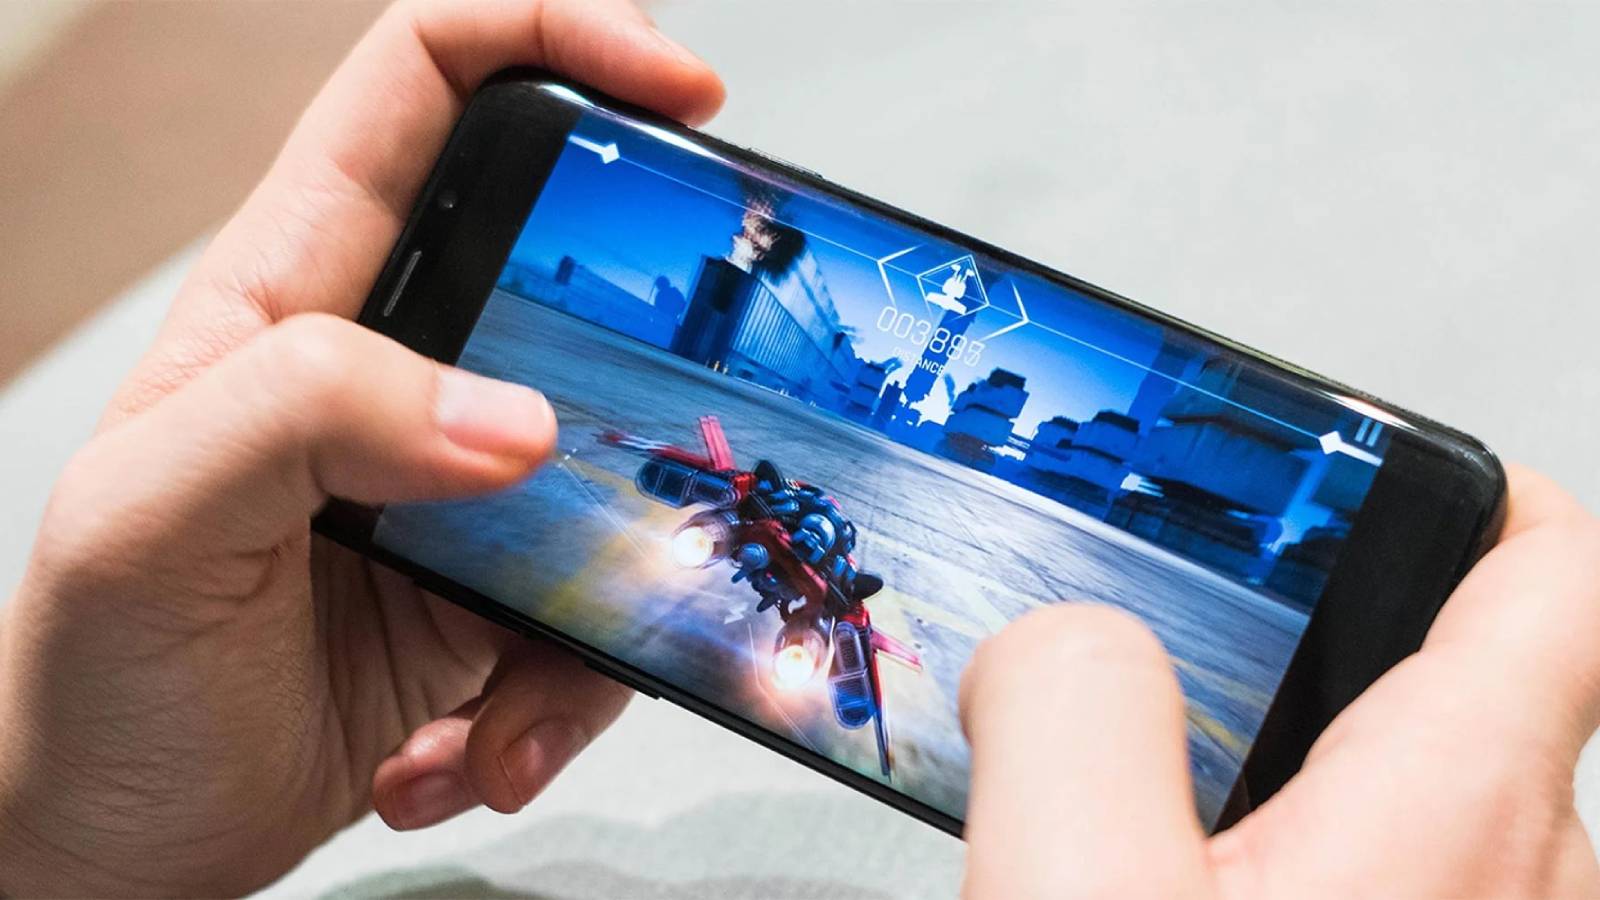  افزایش سرعت و عملکرد گوشی در بازی (اندروید و iOS)، افزایش عملکرد گوشی در بازی